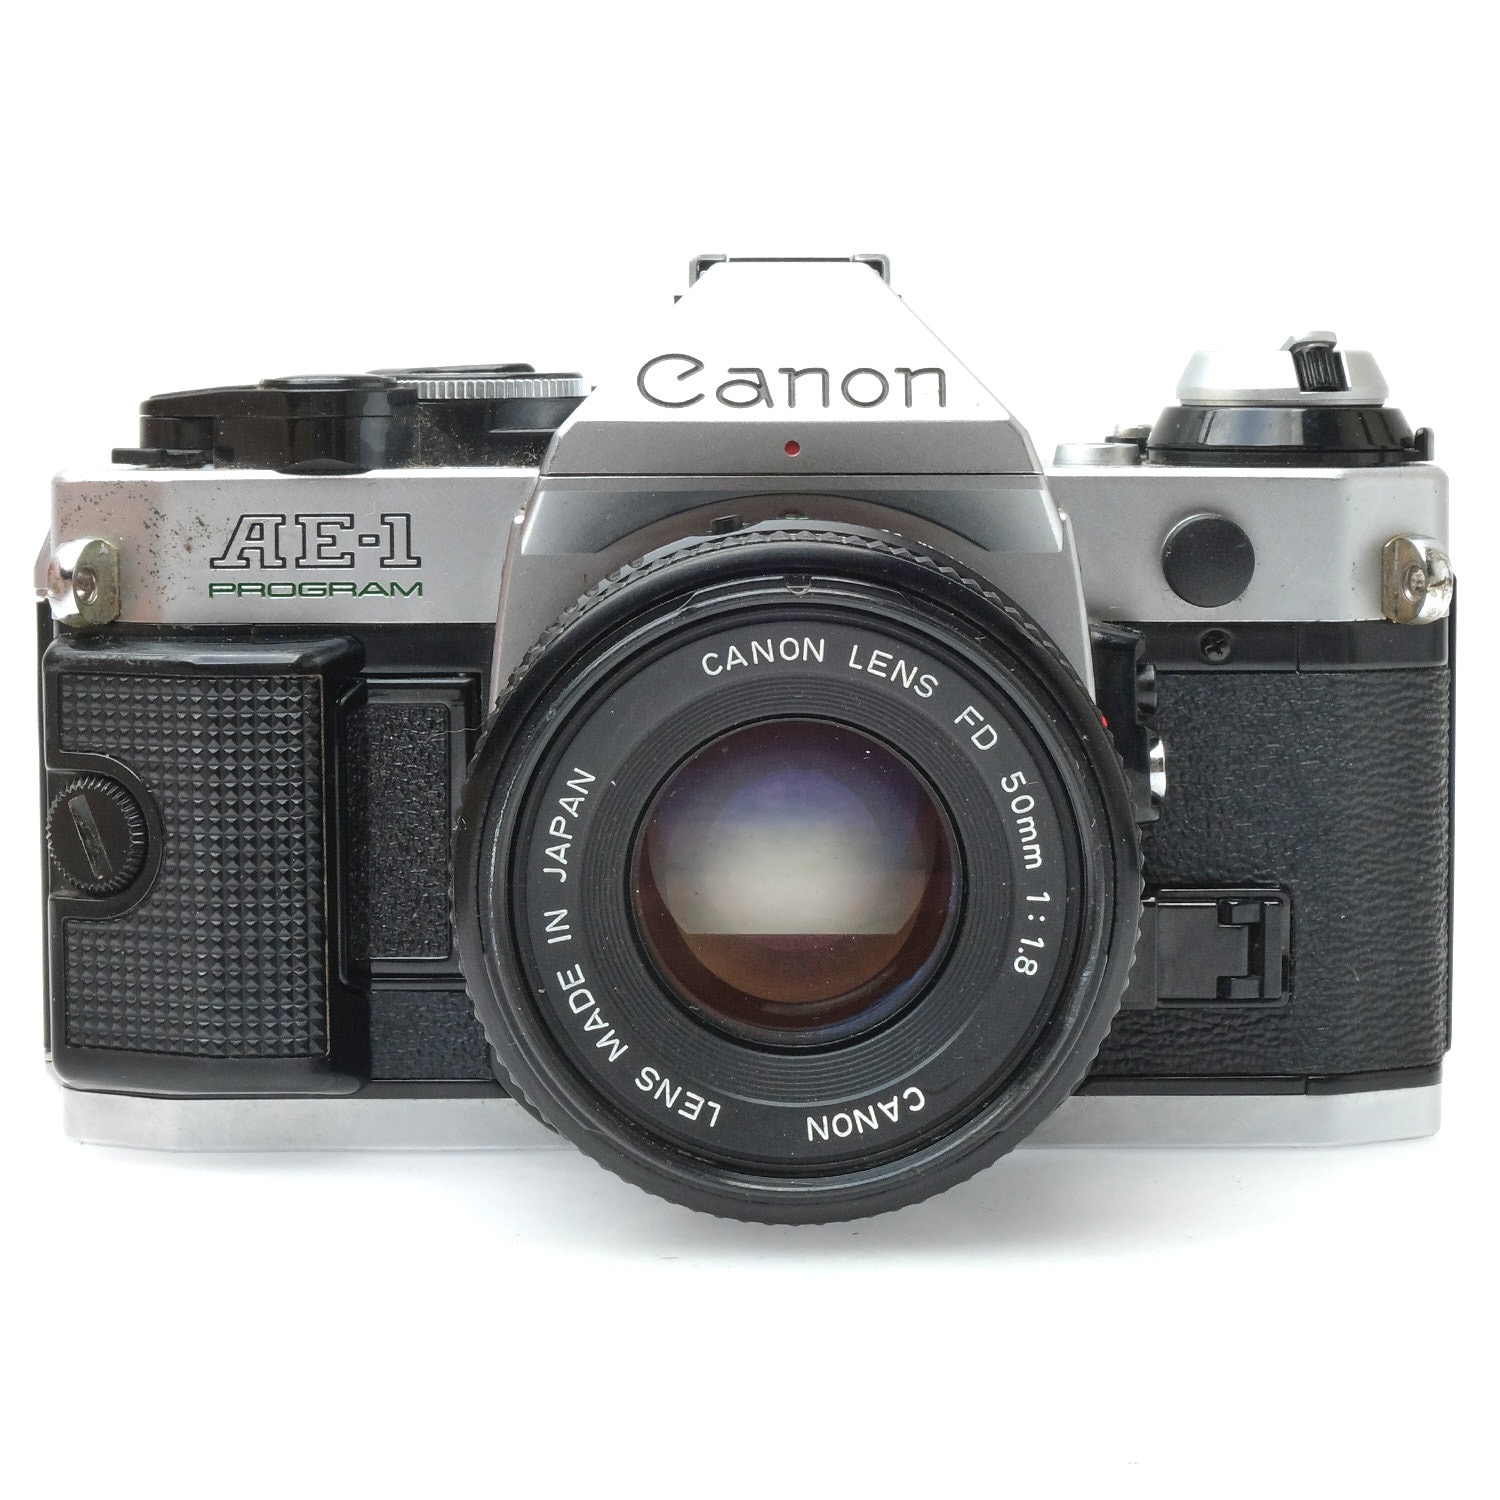 Canon AE-1, 50mm f1.8 4035490